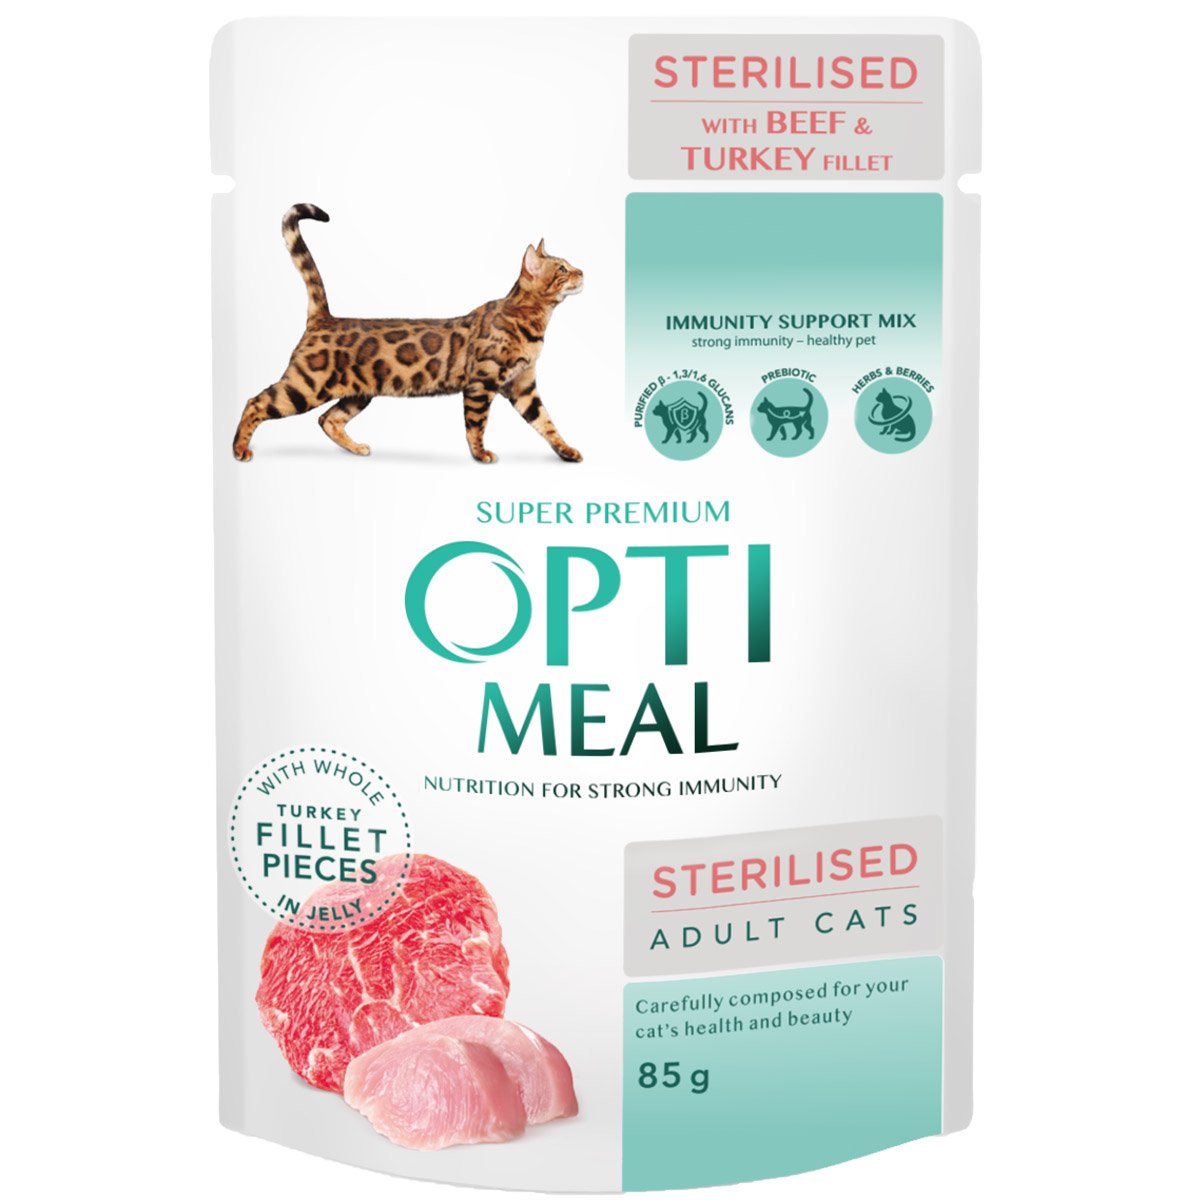 Влажный корм Optimeal для стерилизованных кошек и кастрированных котов, с говядиной и филе индейки в желе, 85 г - фото 1